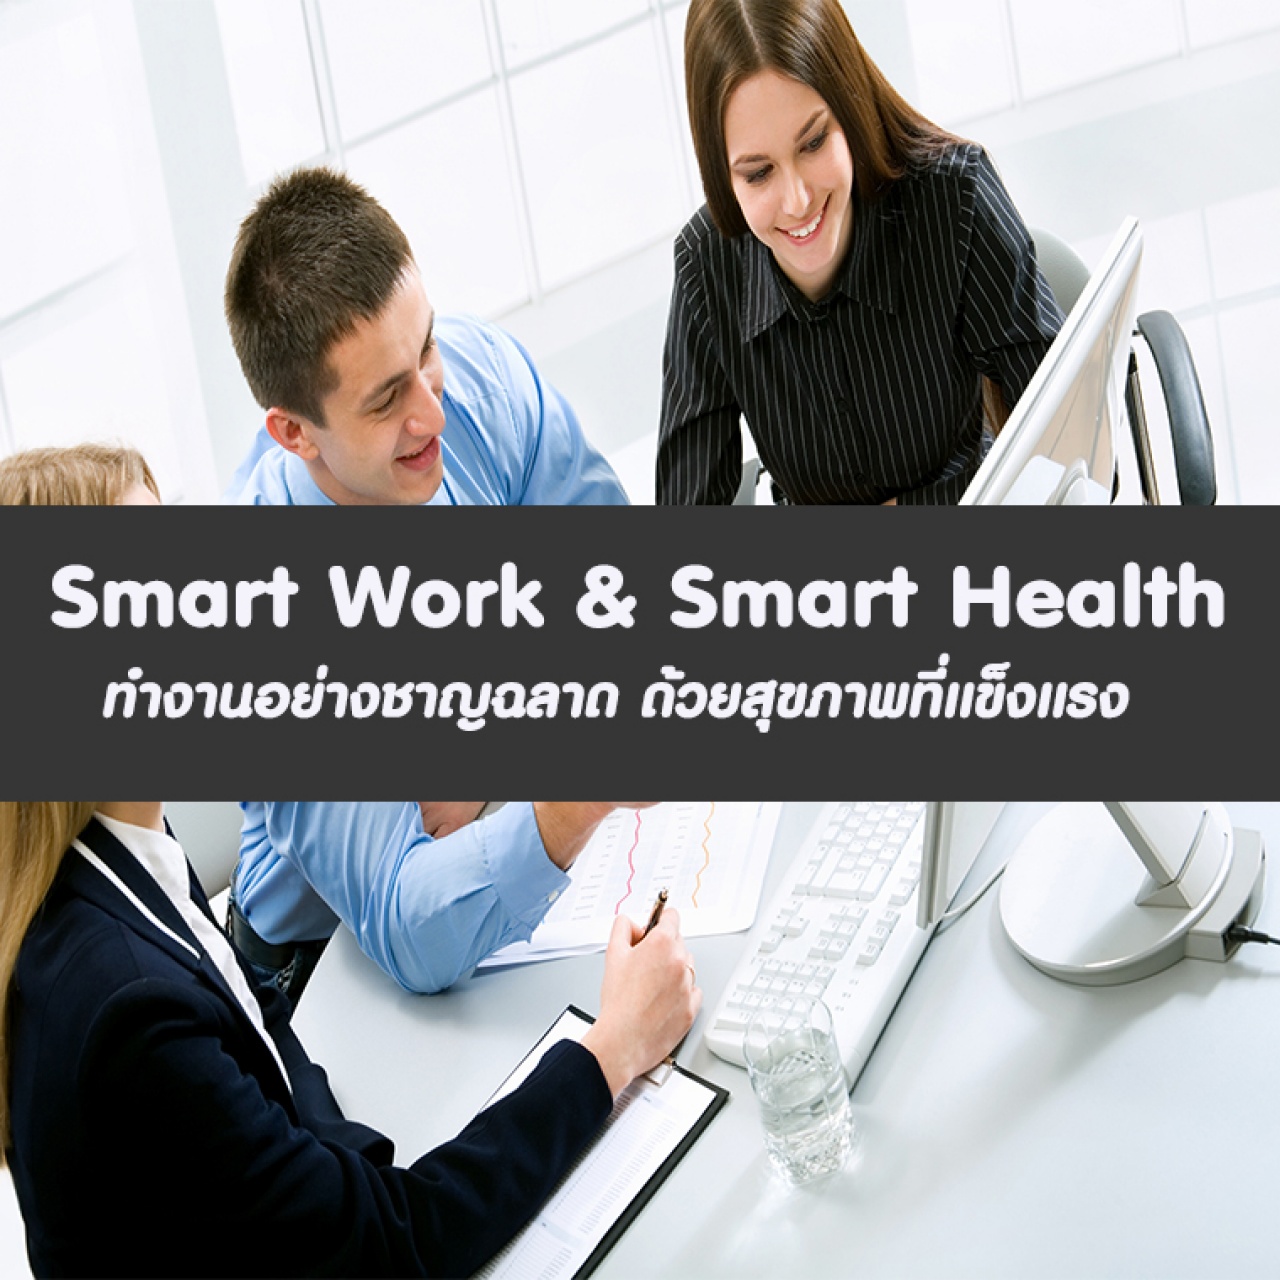 หลักสูตร Smart Work  Smart Health ทำงานอย่างชาญฉลาด ด้วยสุขภาพที่แข็งแรง